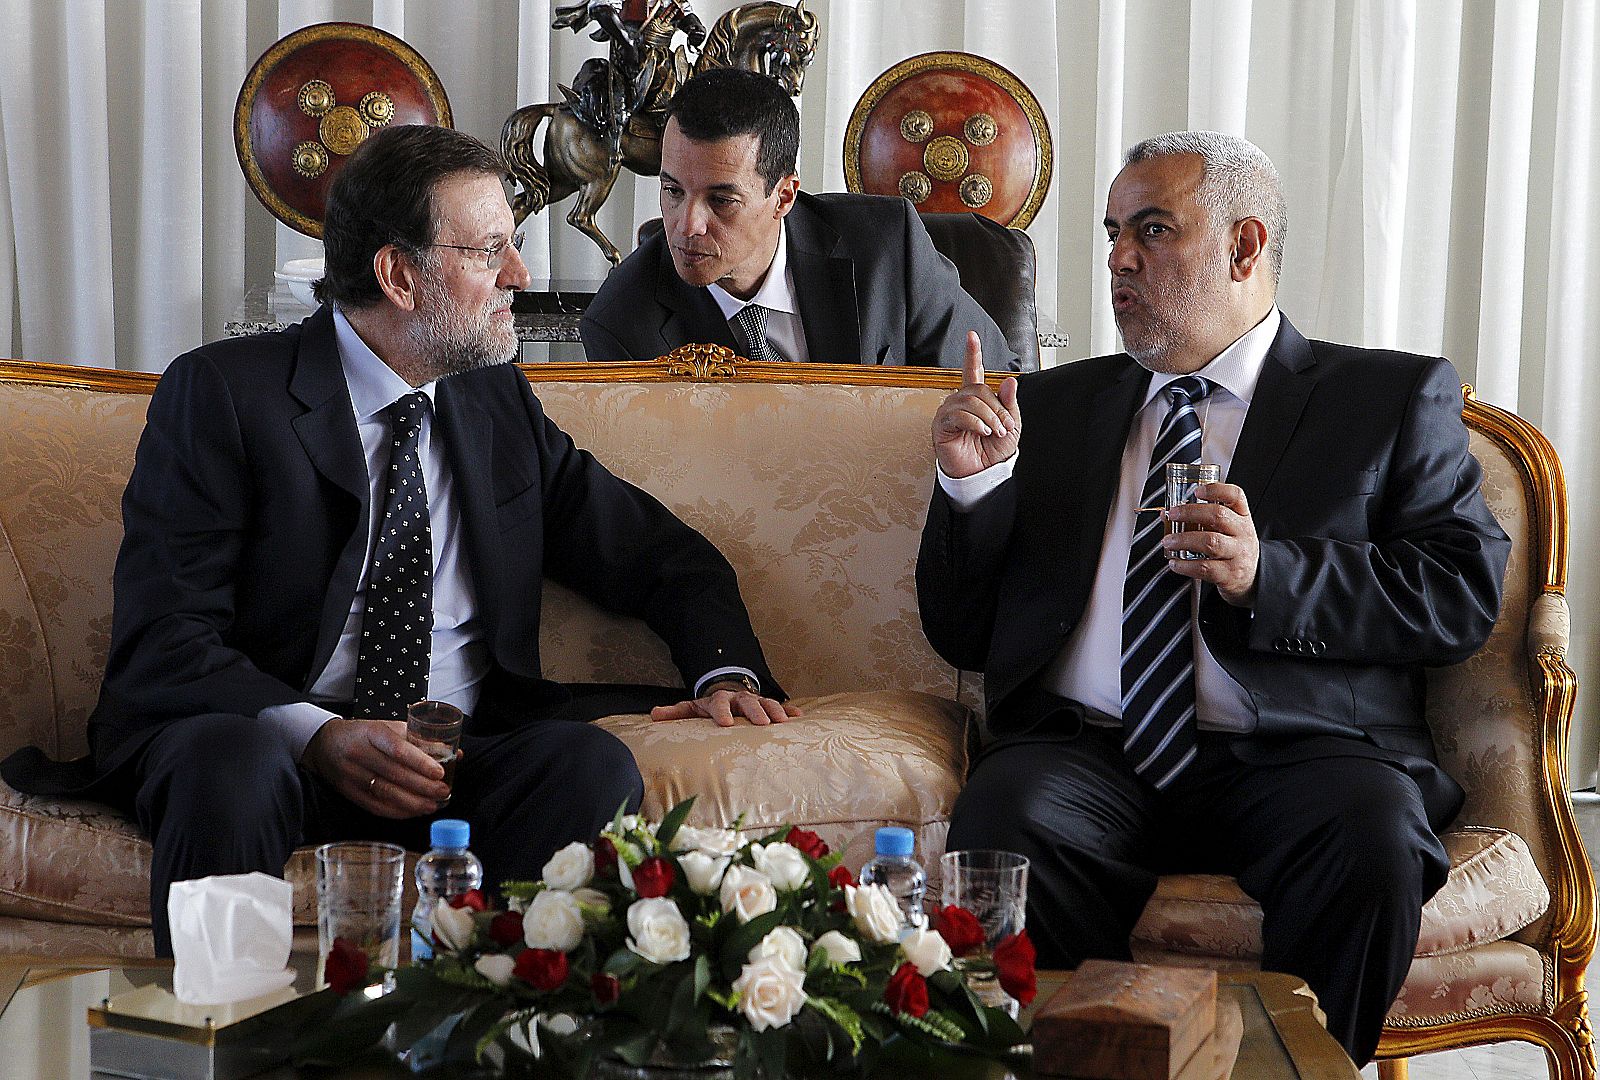 El presidente del Gobierno español, Mariano Rajoy, y su homólogo marroquí, Abdelilah Benkirán, durante la reunión que mantuvieron en 2012 en Rabat.